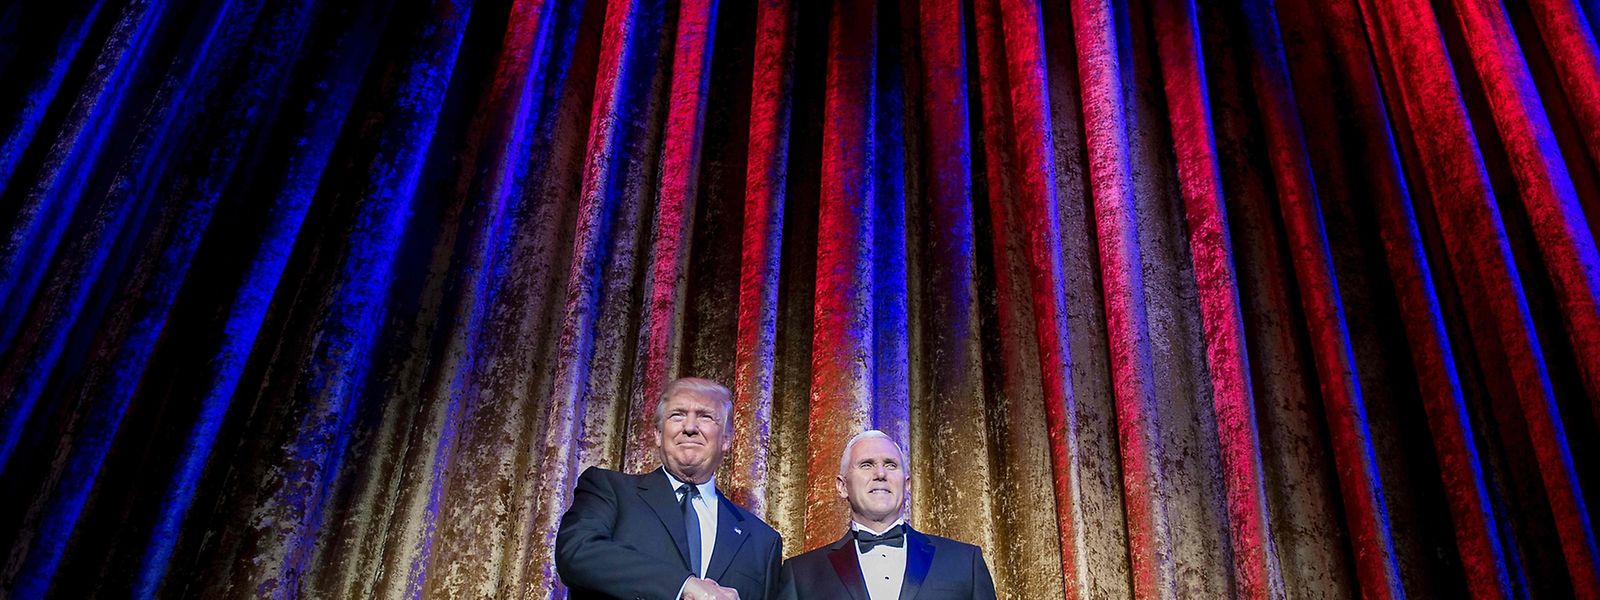 Der designierte US-Präsident Donald Trump, hier mit dem künftigen Vizepräsident Mike Pence (r.), könnte die Weltordnung bald auf den Kopf stellen